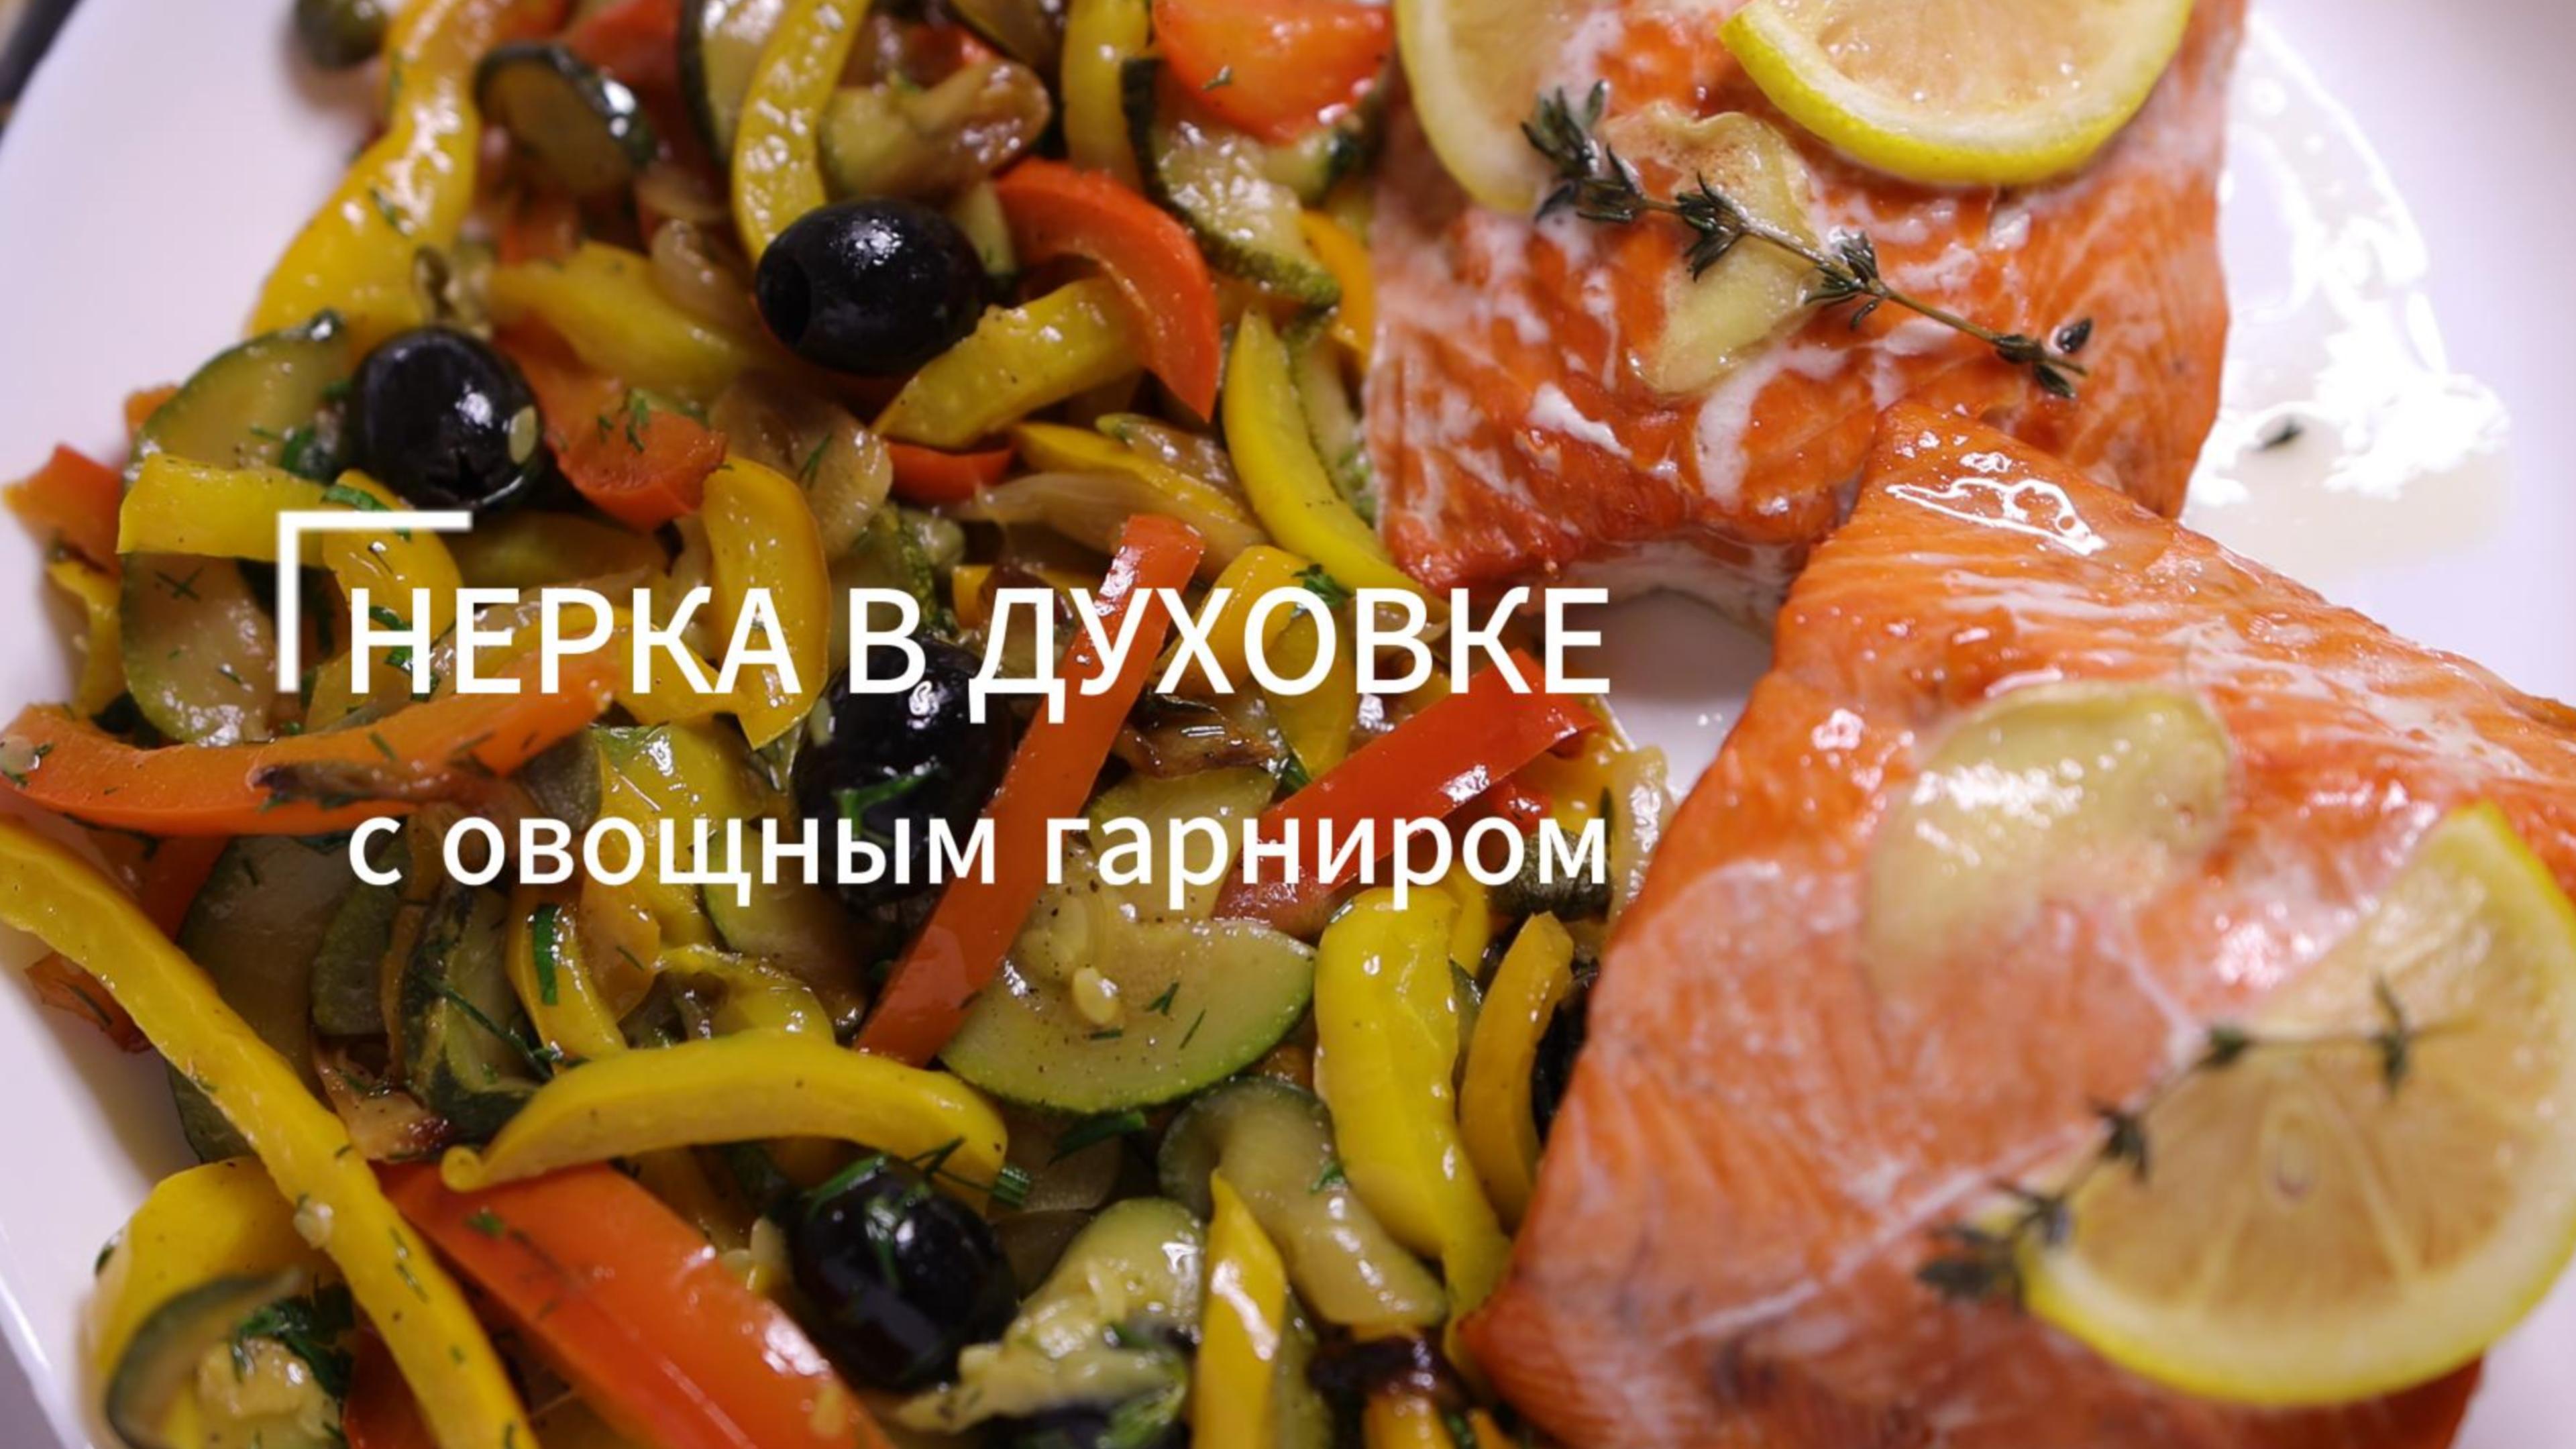 Рыба запеченная с болгарским перцем и грибами